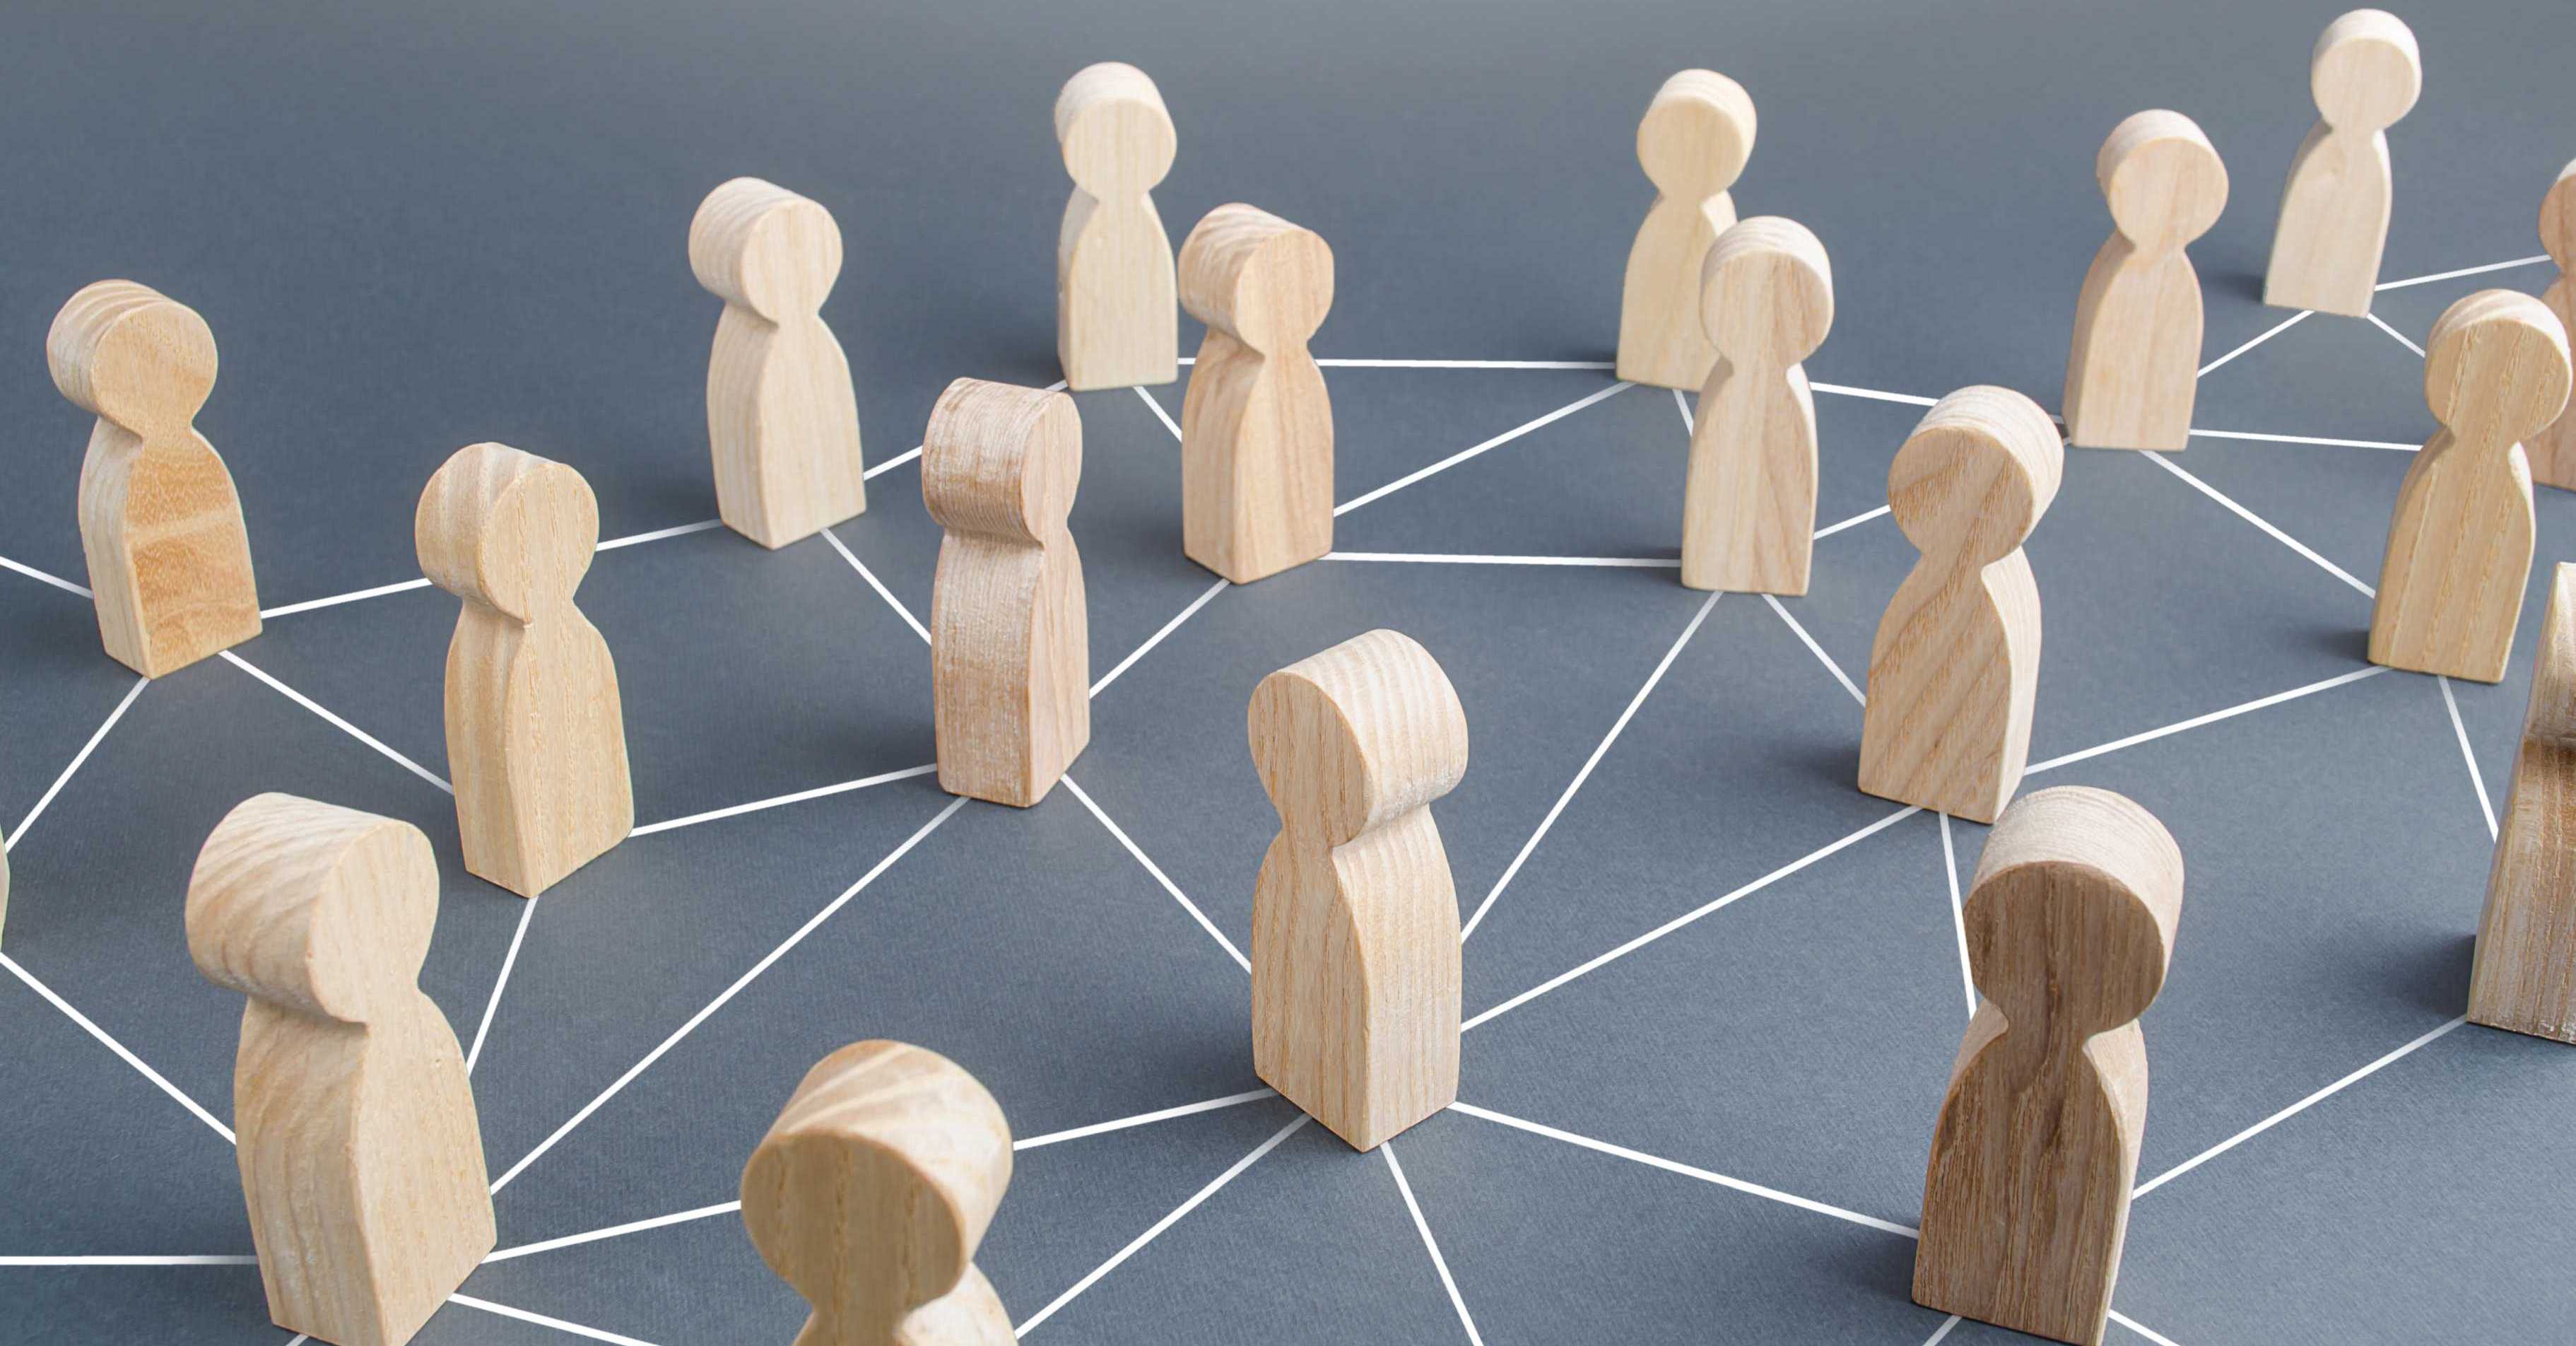 Holzfiguren stehen auf den Knotenpunkten eines Liniennetzes